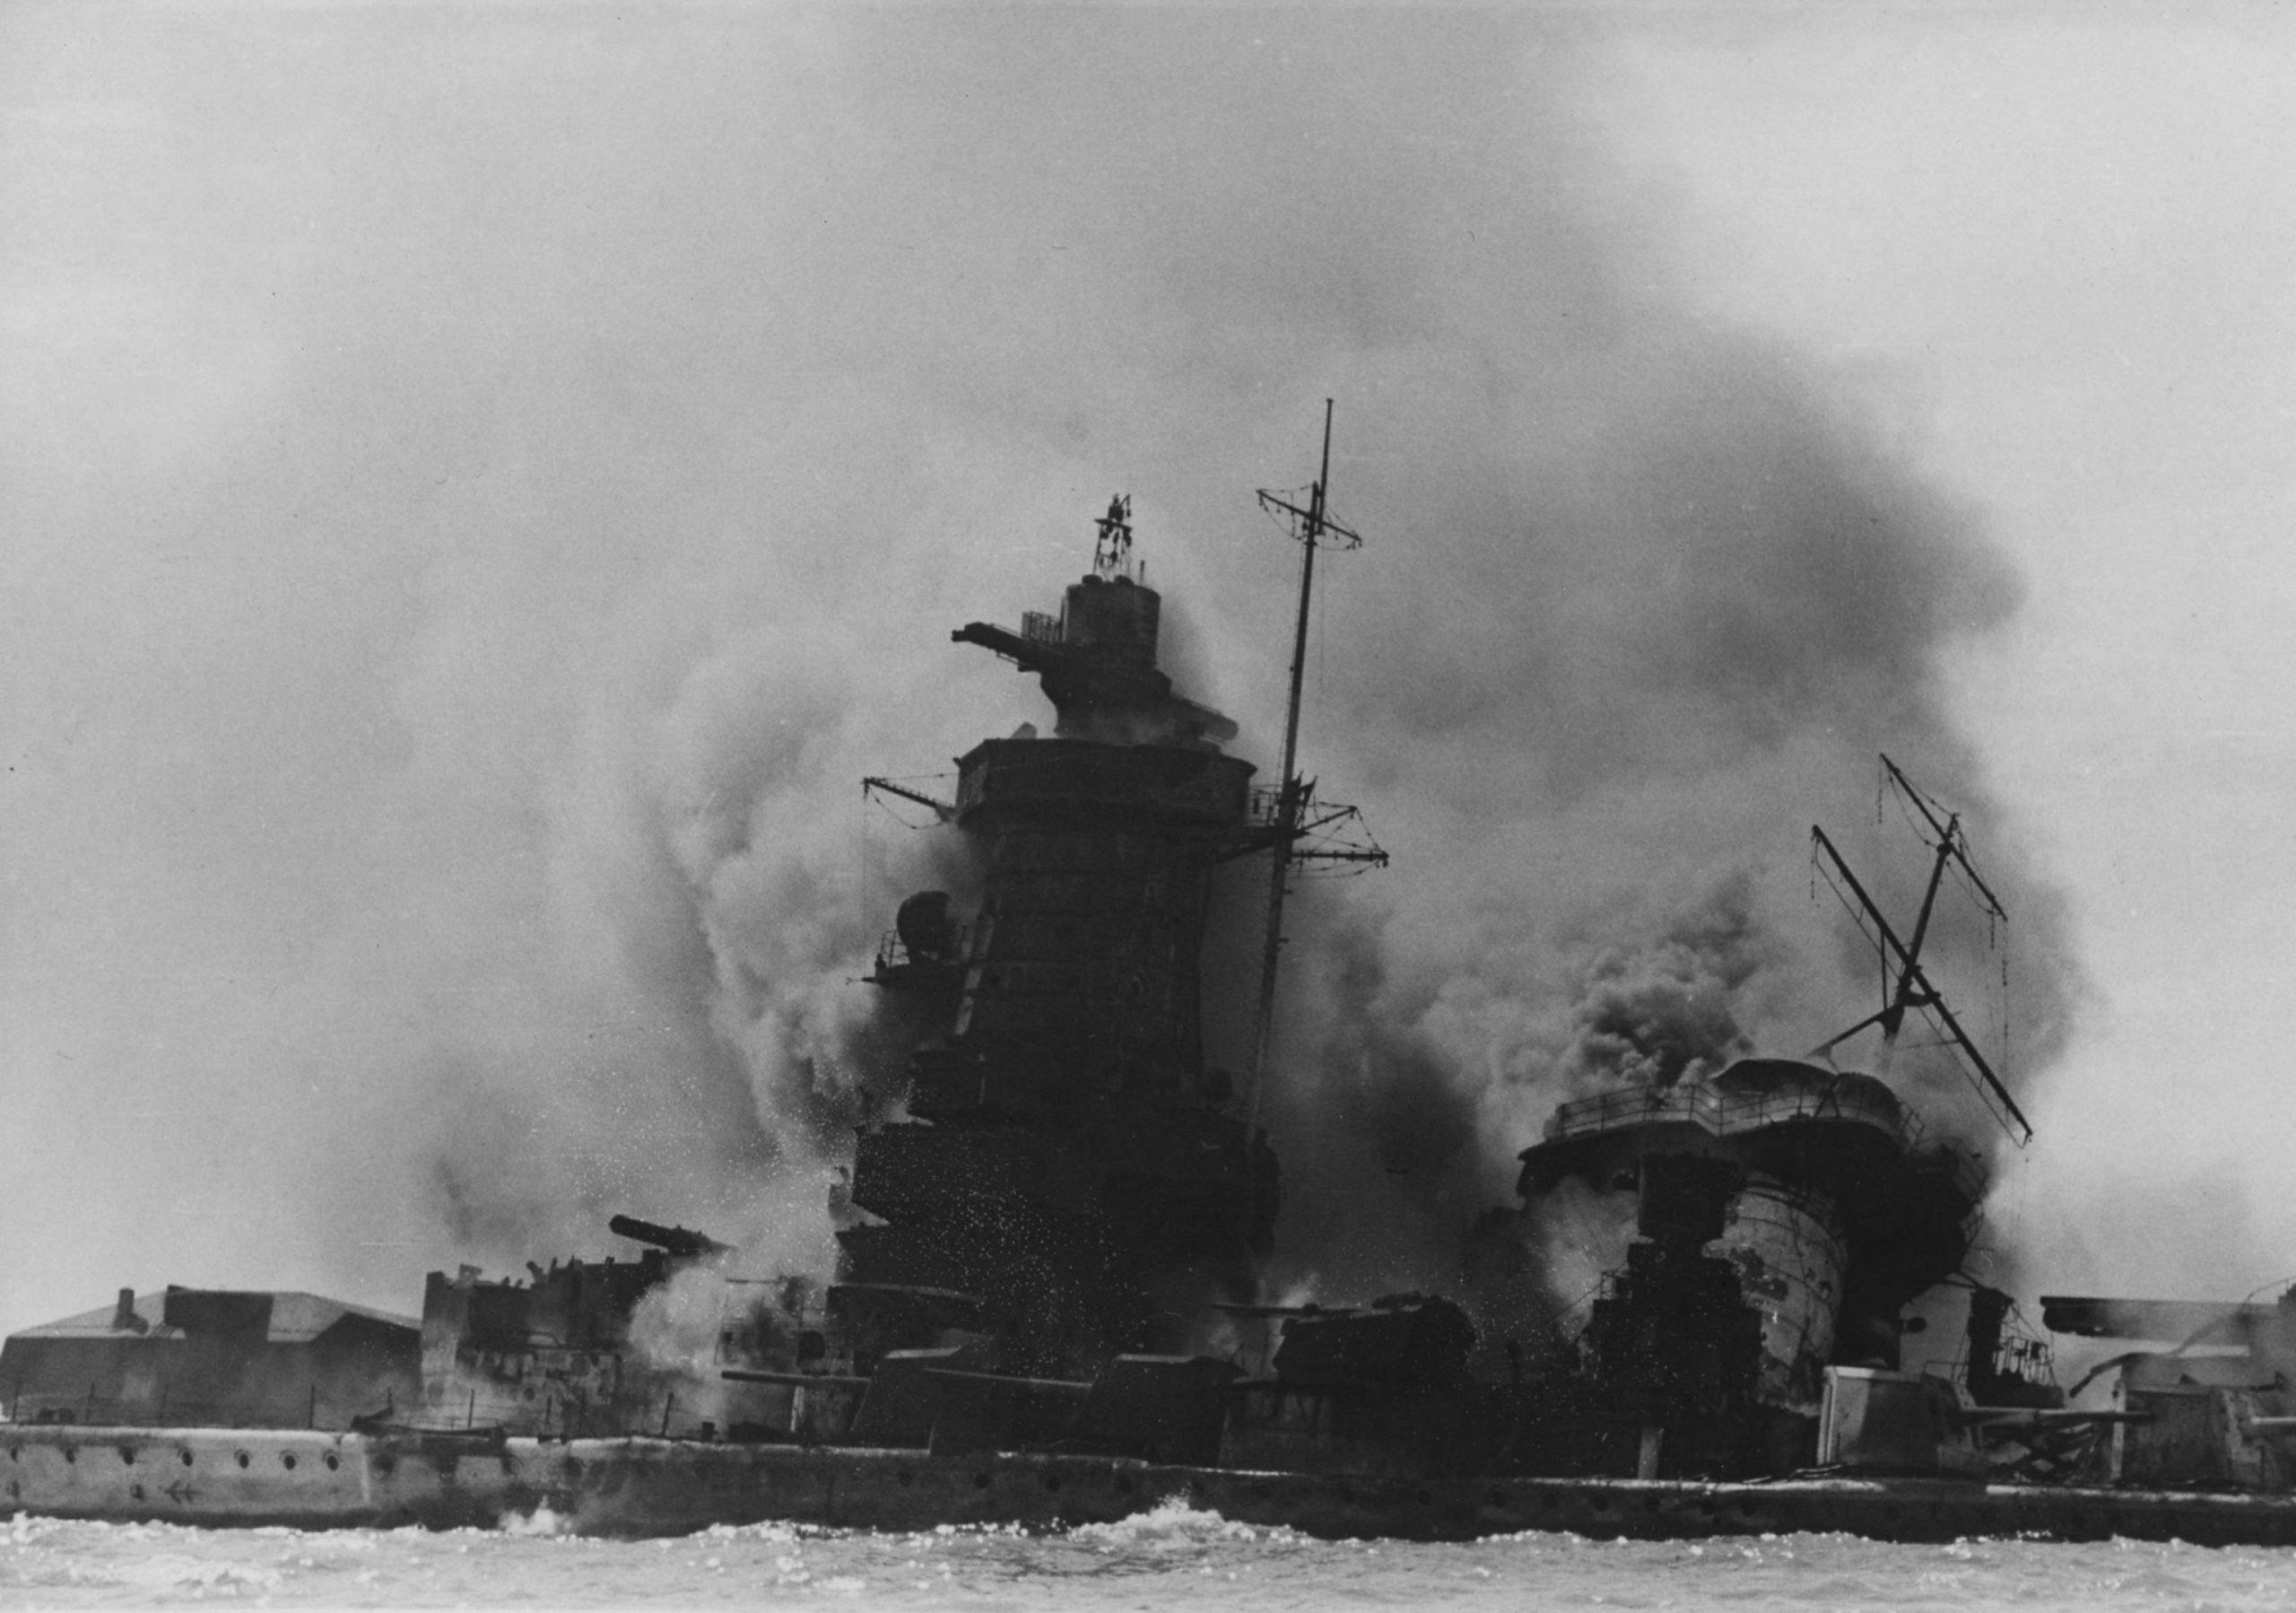 Admiral Graf Spee heavy cruiser